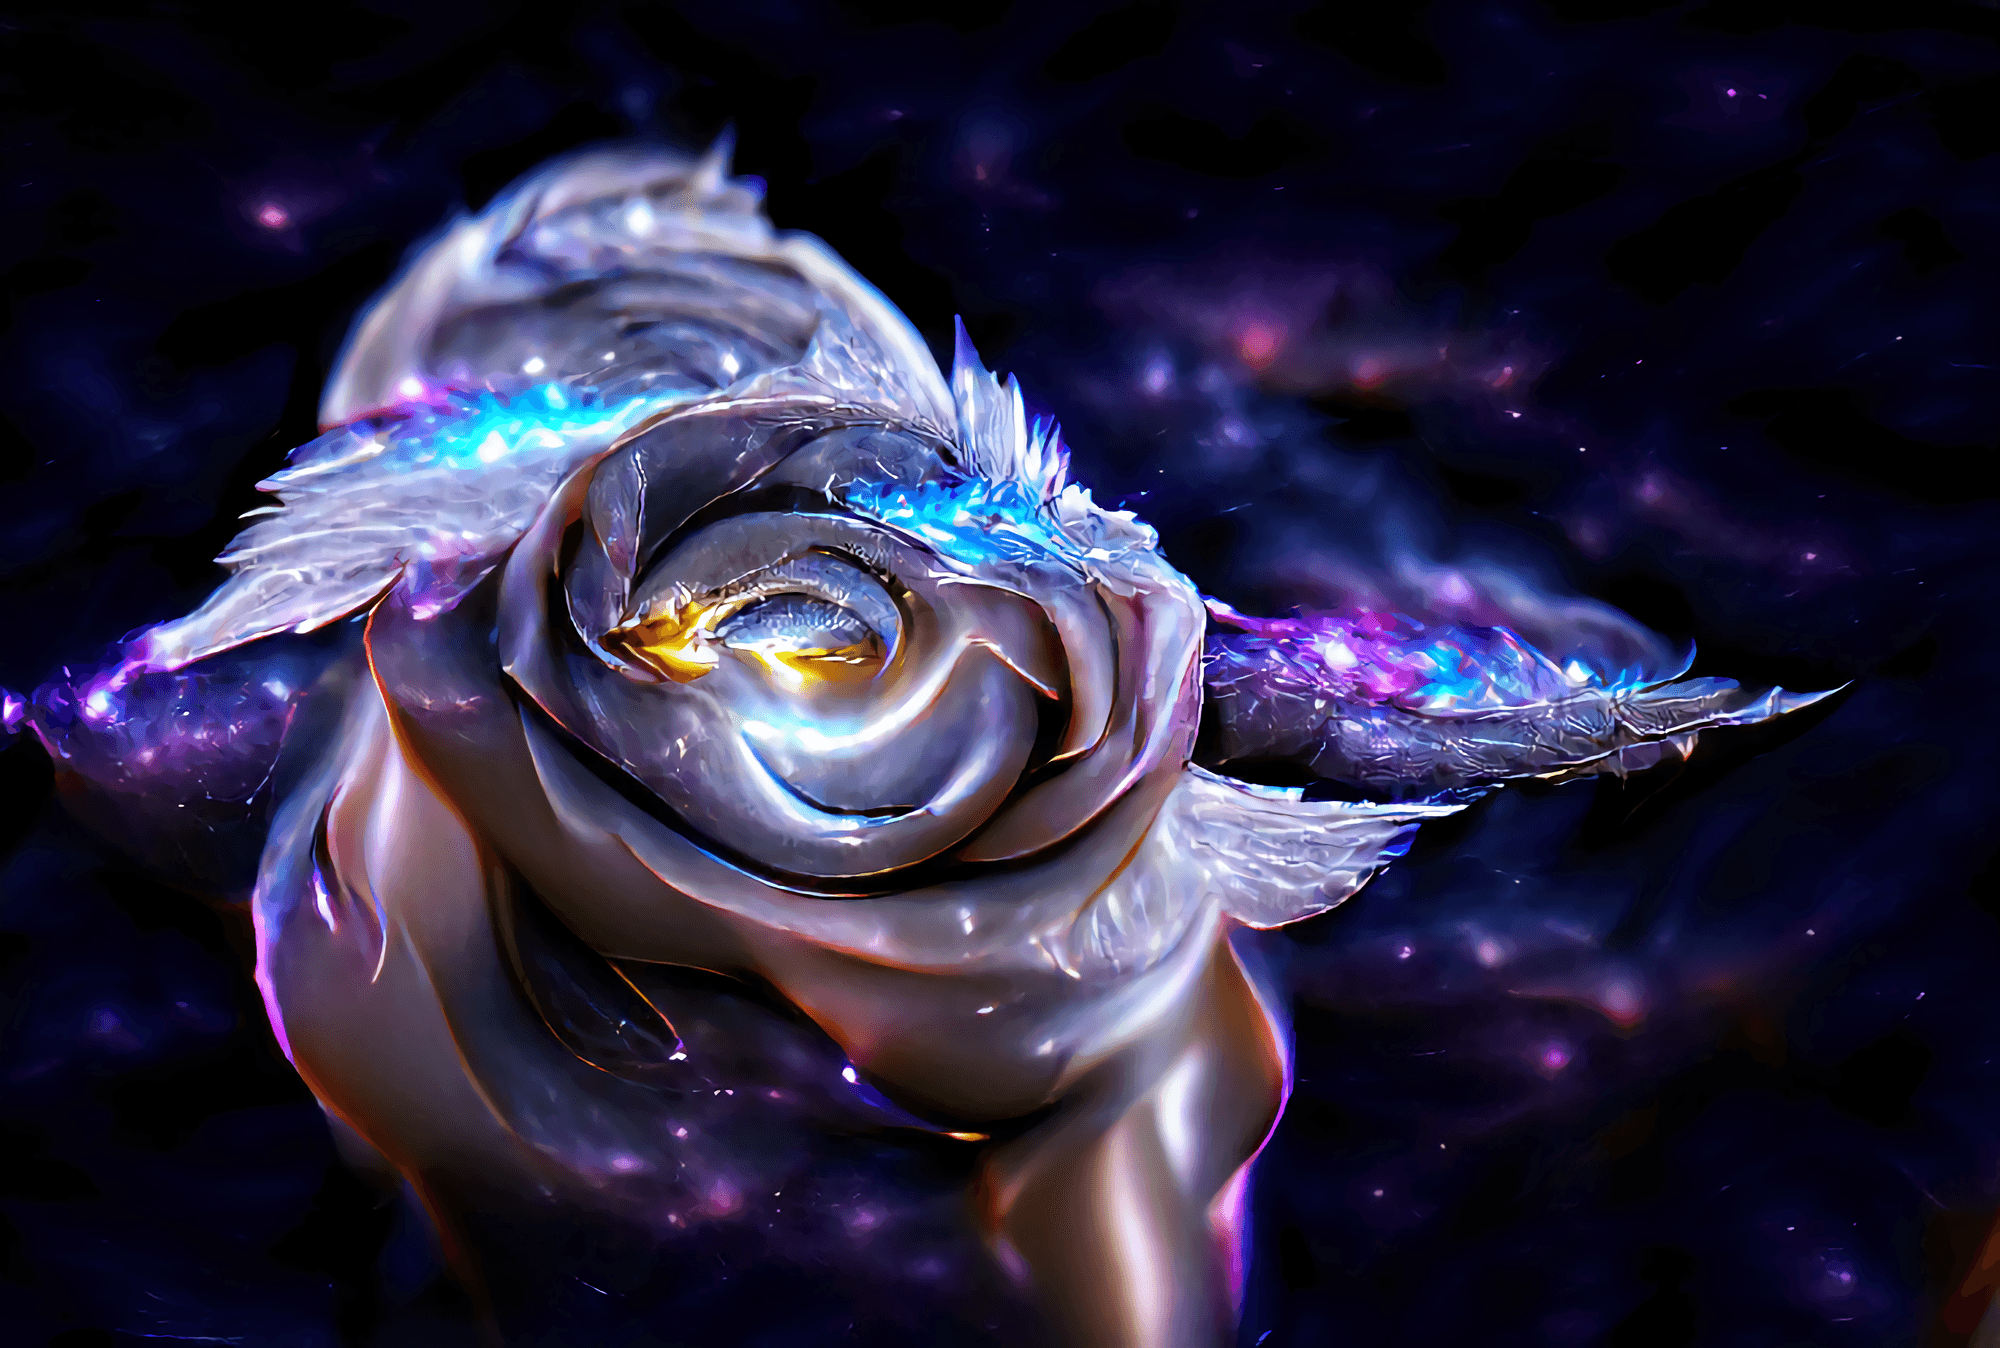 Hình ảnh bông hoa hồng với thiên hà nền tuyệt đẹp sẽ làm bạn bị thu hút ngay lập tức. Cảm nhận sự hòa quyện giữa vẻ đẹp của hoa hồng và thiên hà, bạn chắc chắn sẽ không thất vọng.